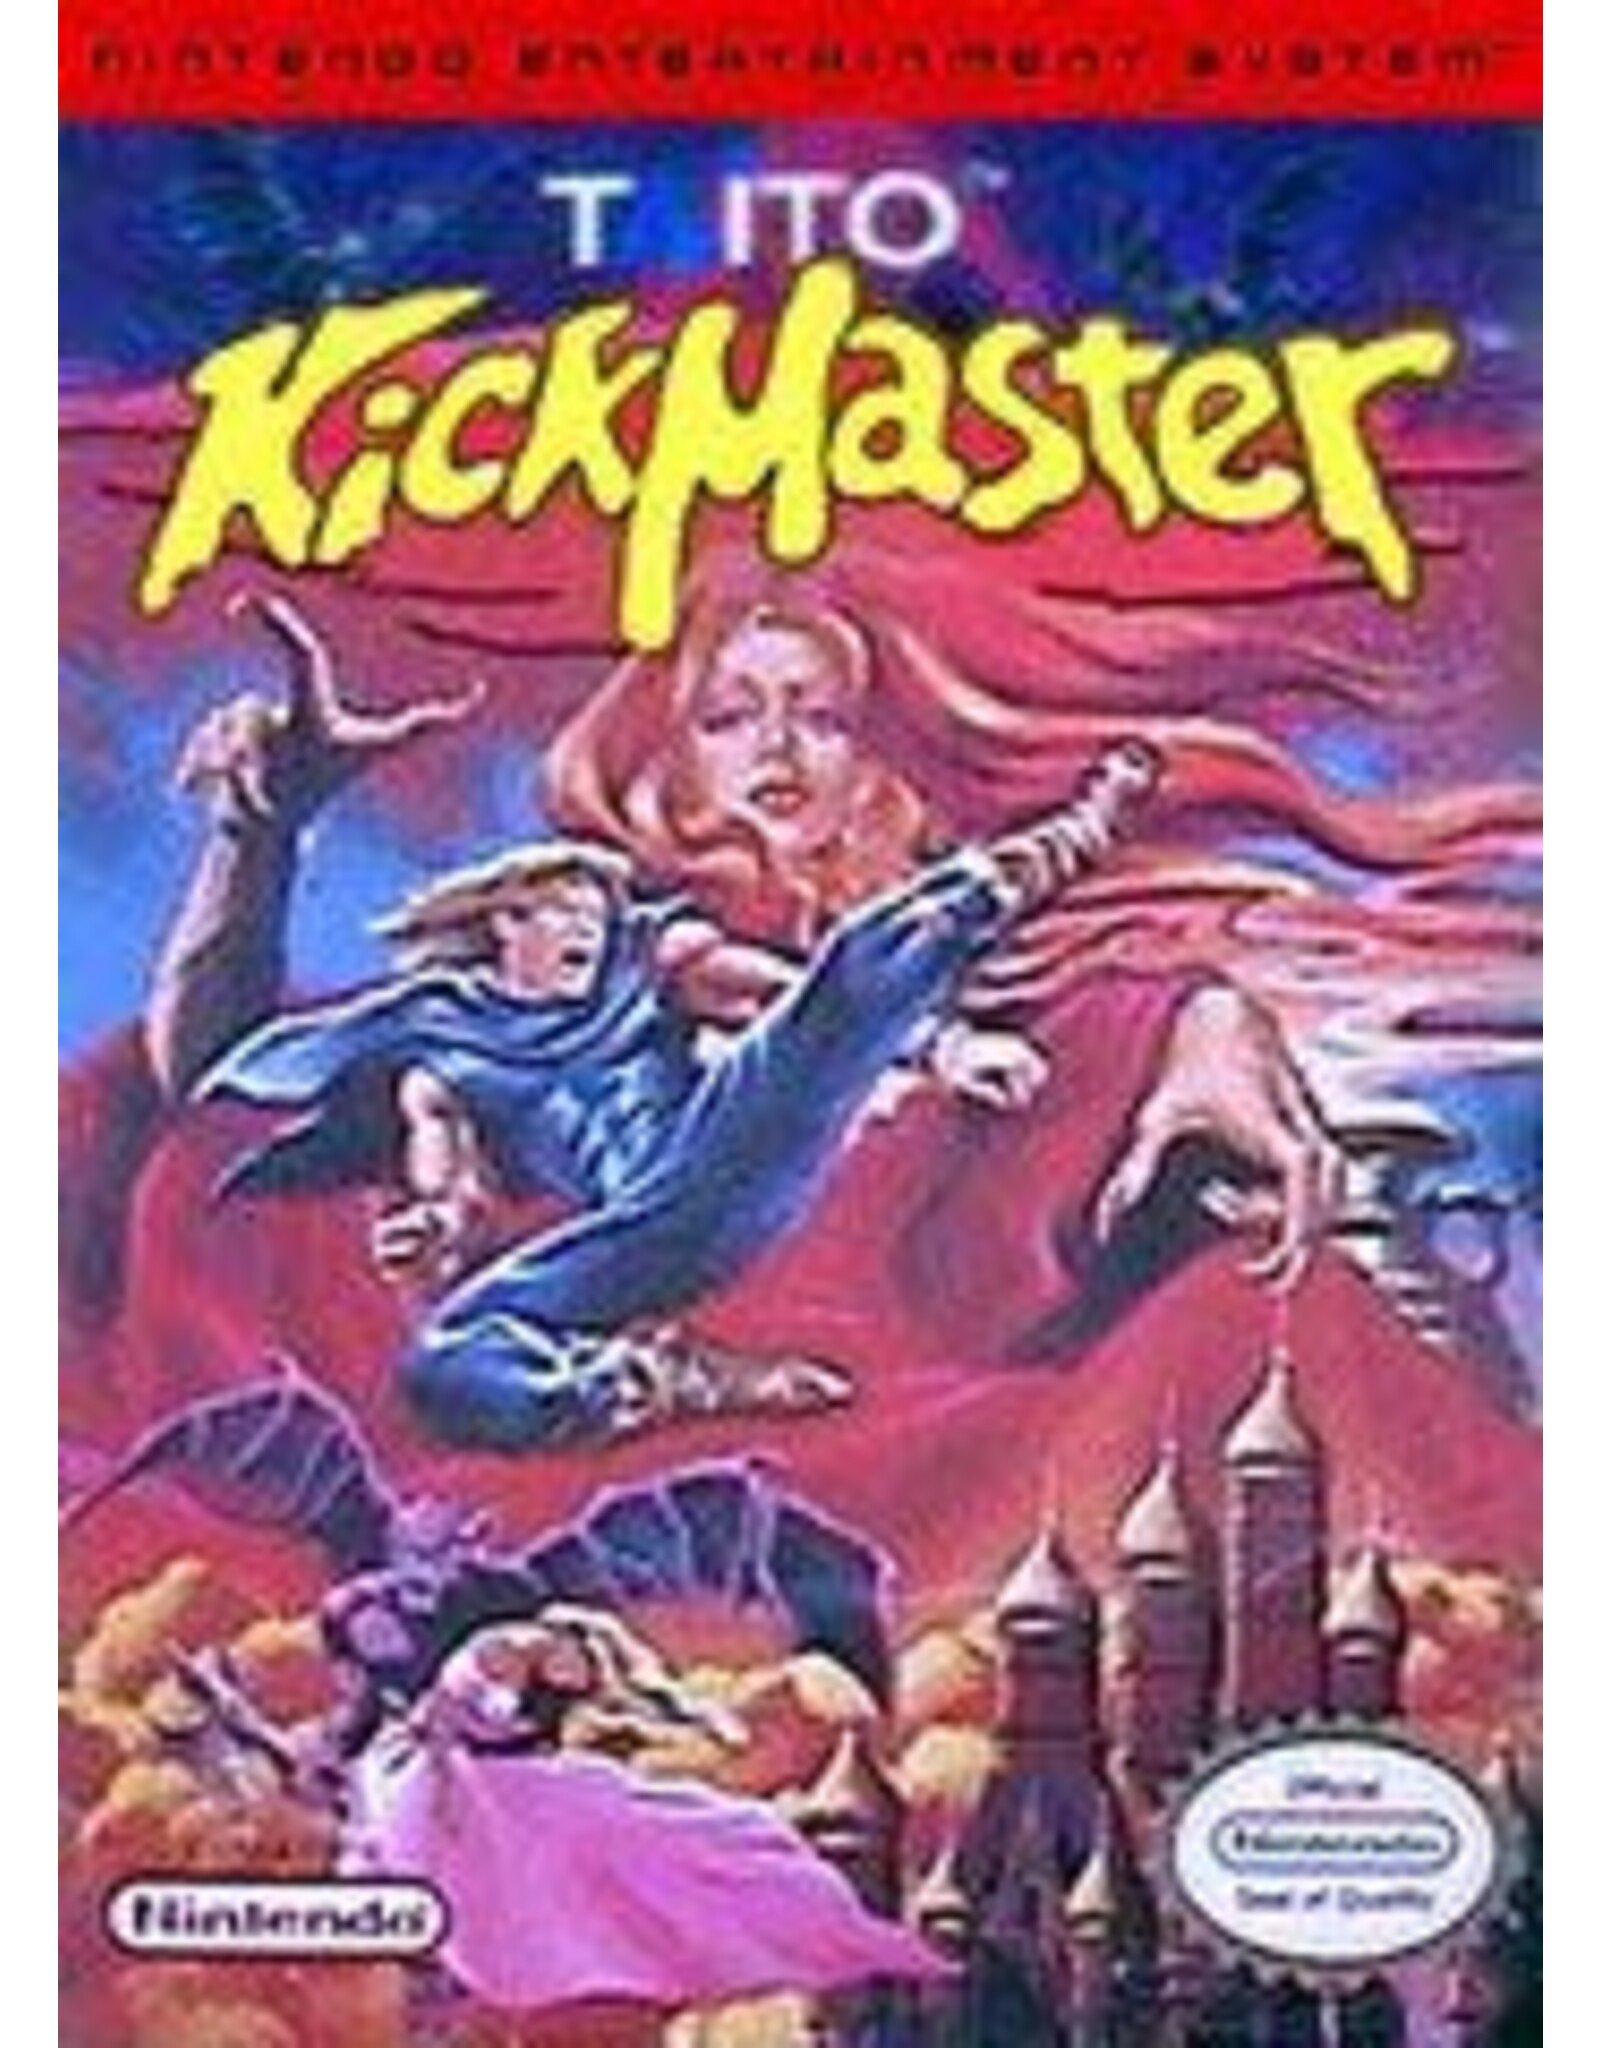 Nintendo Kick Master (Damaged Box, No Manual)